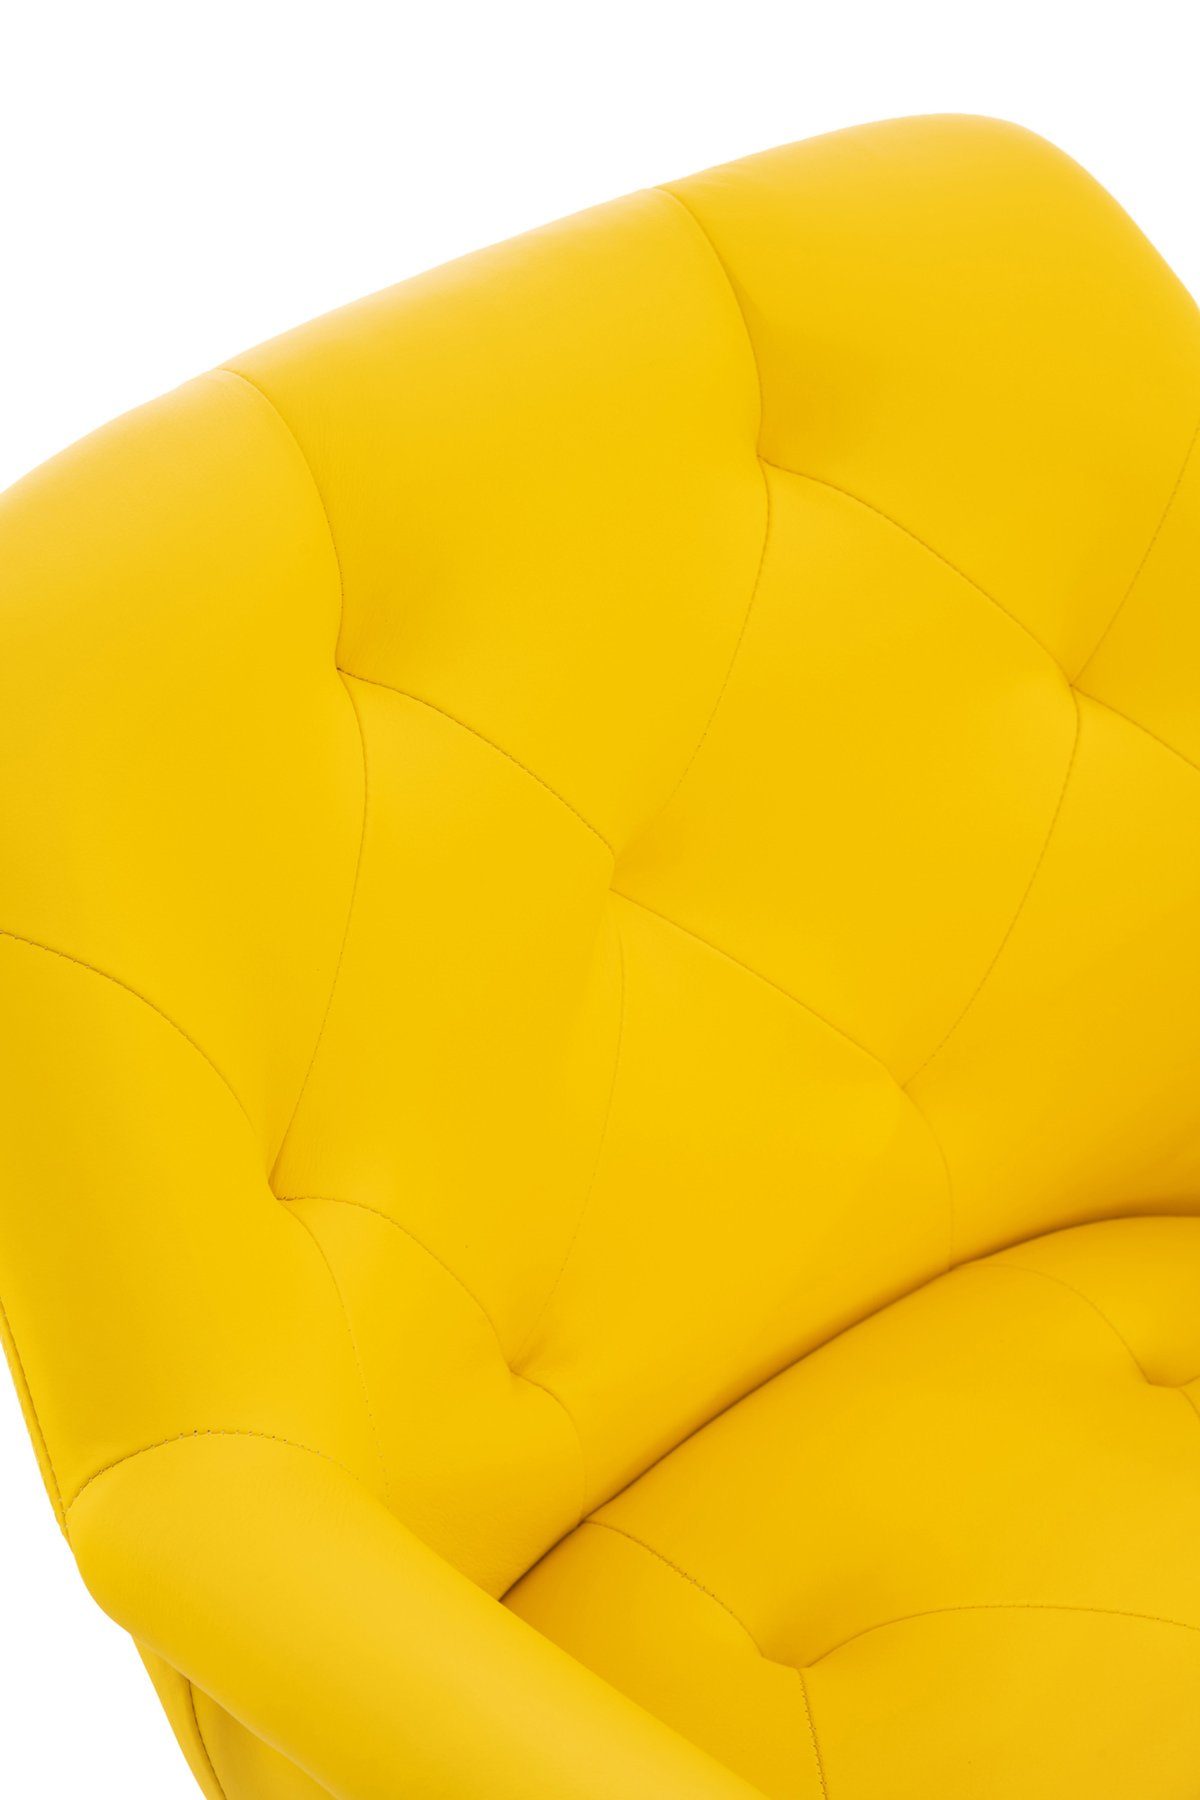 TPFLiving Esszimmerstuhl Lamfol mit gepolsterter Wohnzimmerstuhl), - Esstischstuhl Sitzfläche - Sitzfläche: hochwertig gelb - Kunstleder Gestell: (Küchenstuhl Konferenzstuhl - Metall schwarz